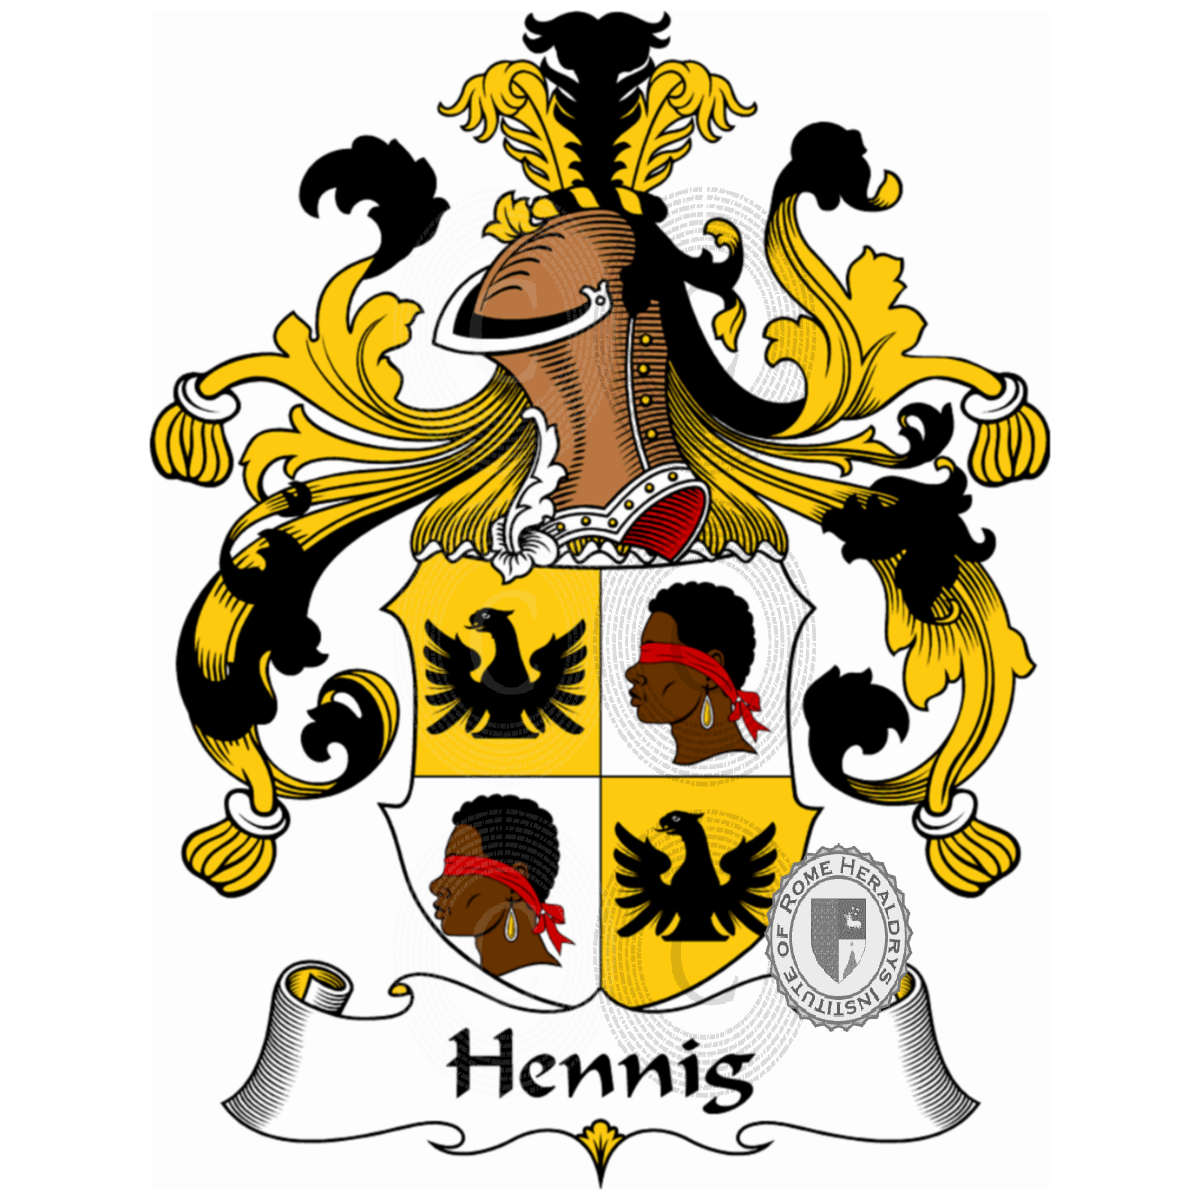 Stemma della famigliaHennig, Hennig de Hennisky